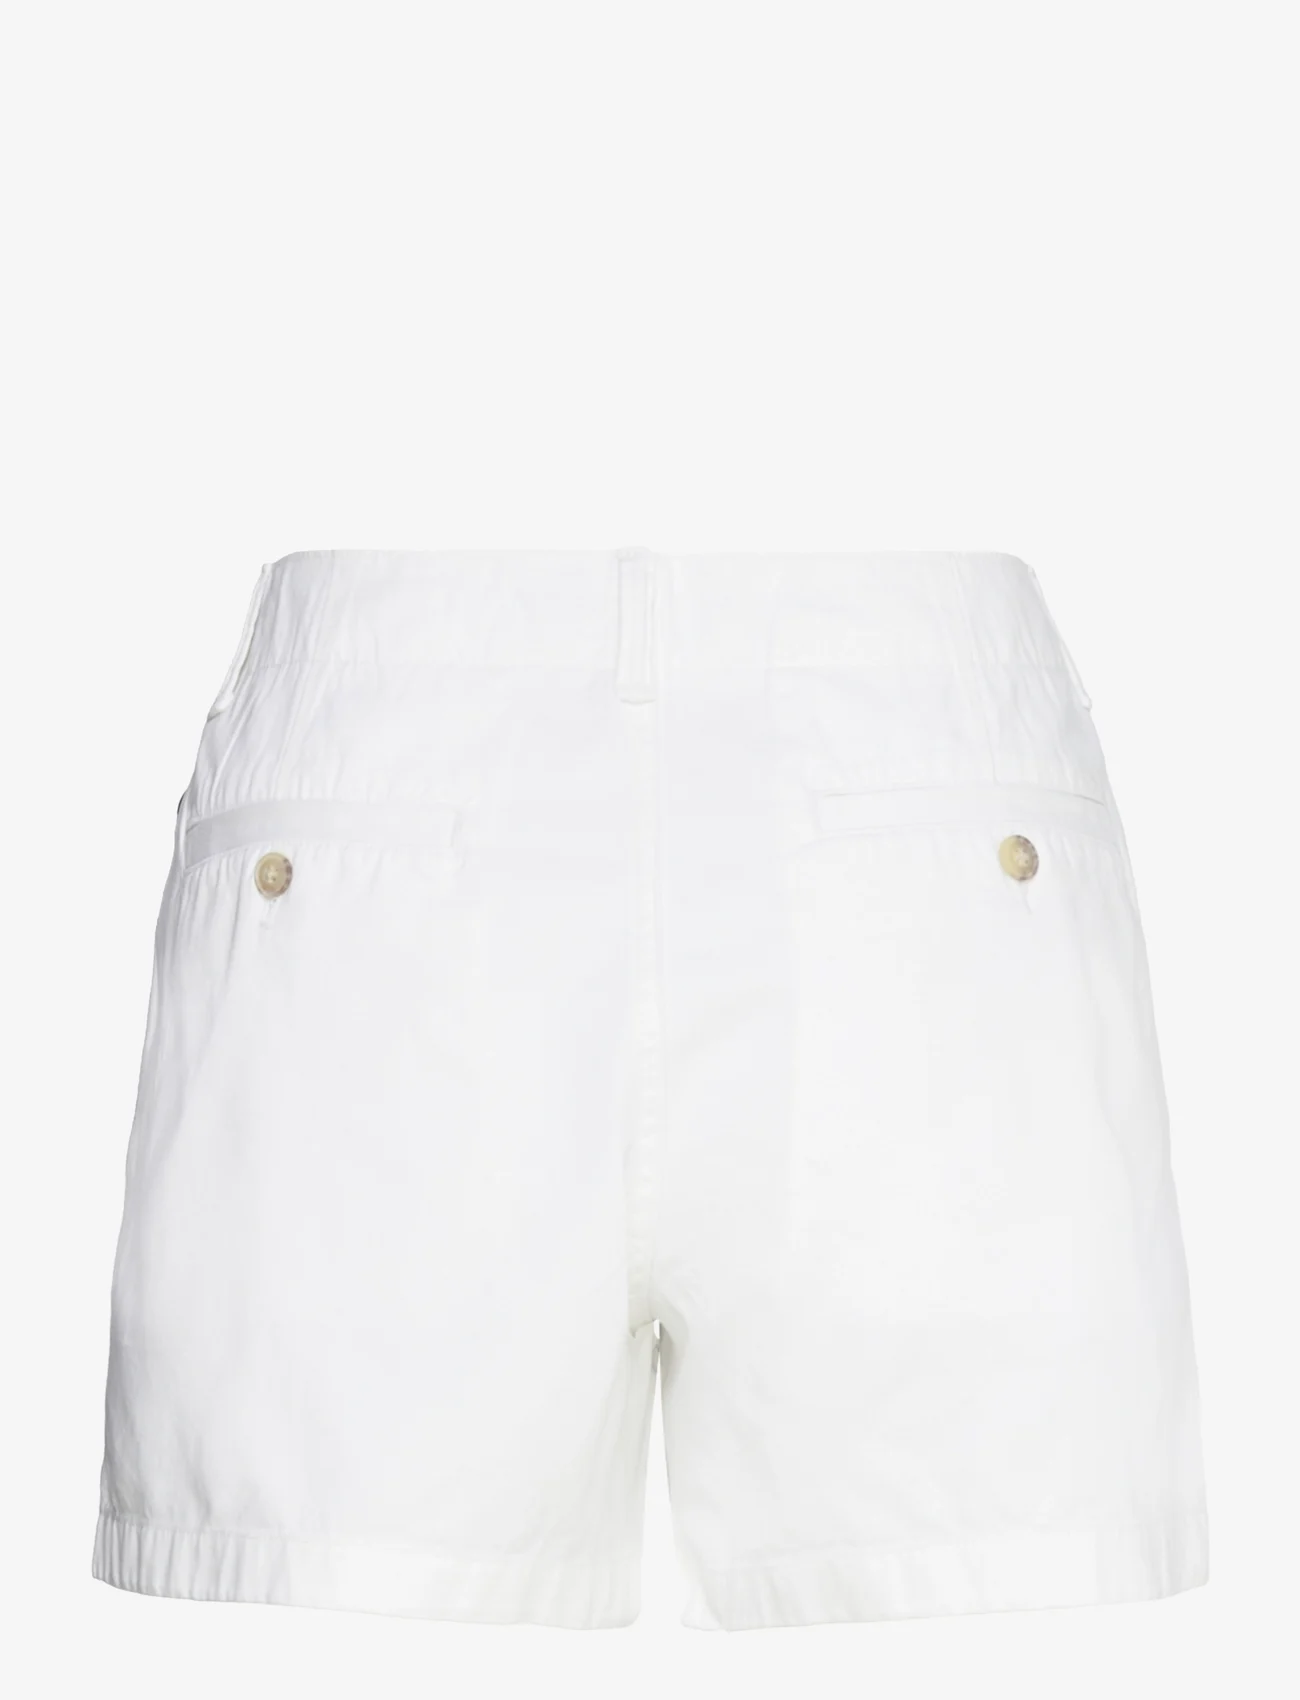 Polo Ralph Lauren - Chino Twill Short - „chino“ stiliaus šortai - deckwash white - 1